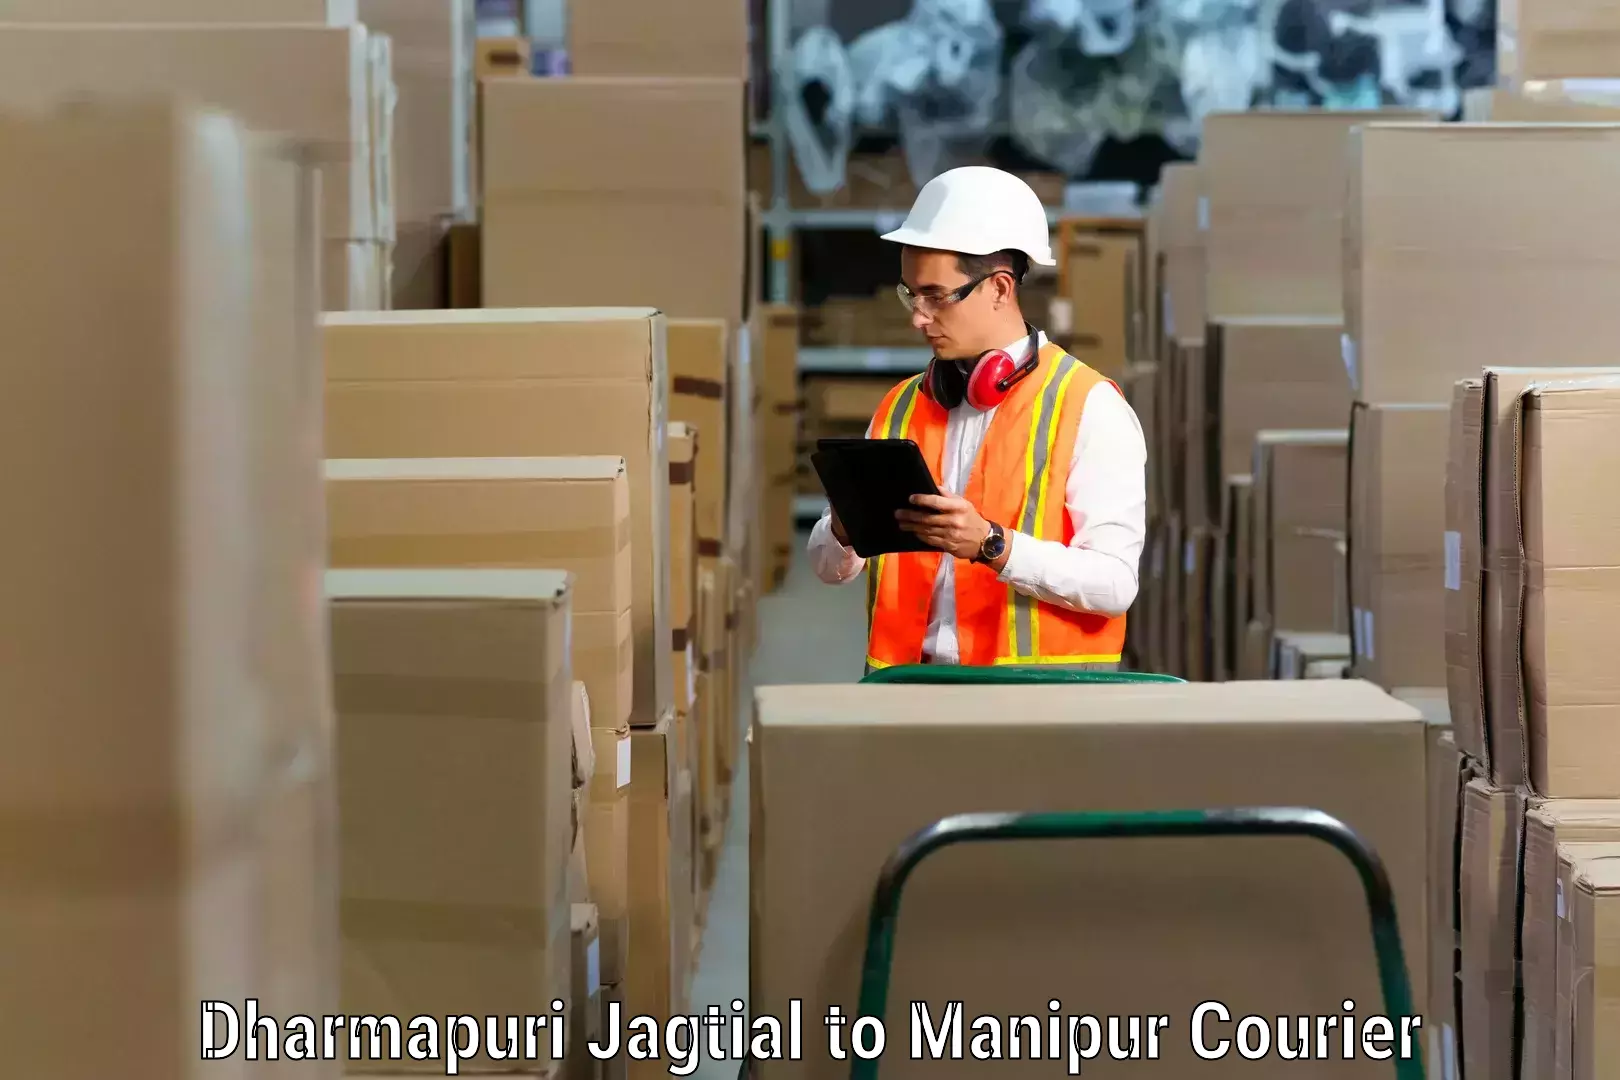 Furniture transport and logistics Dharmapuri Jagtial to Ukhrul